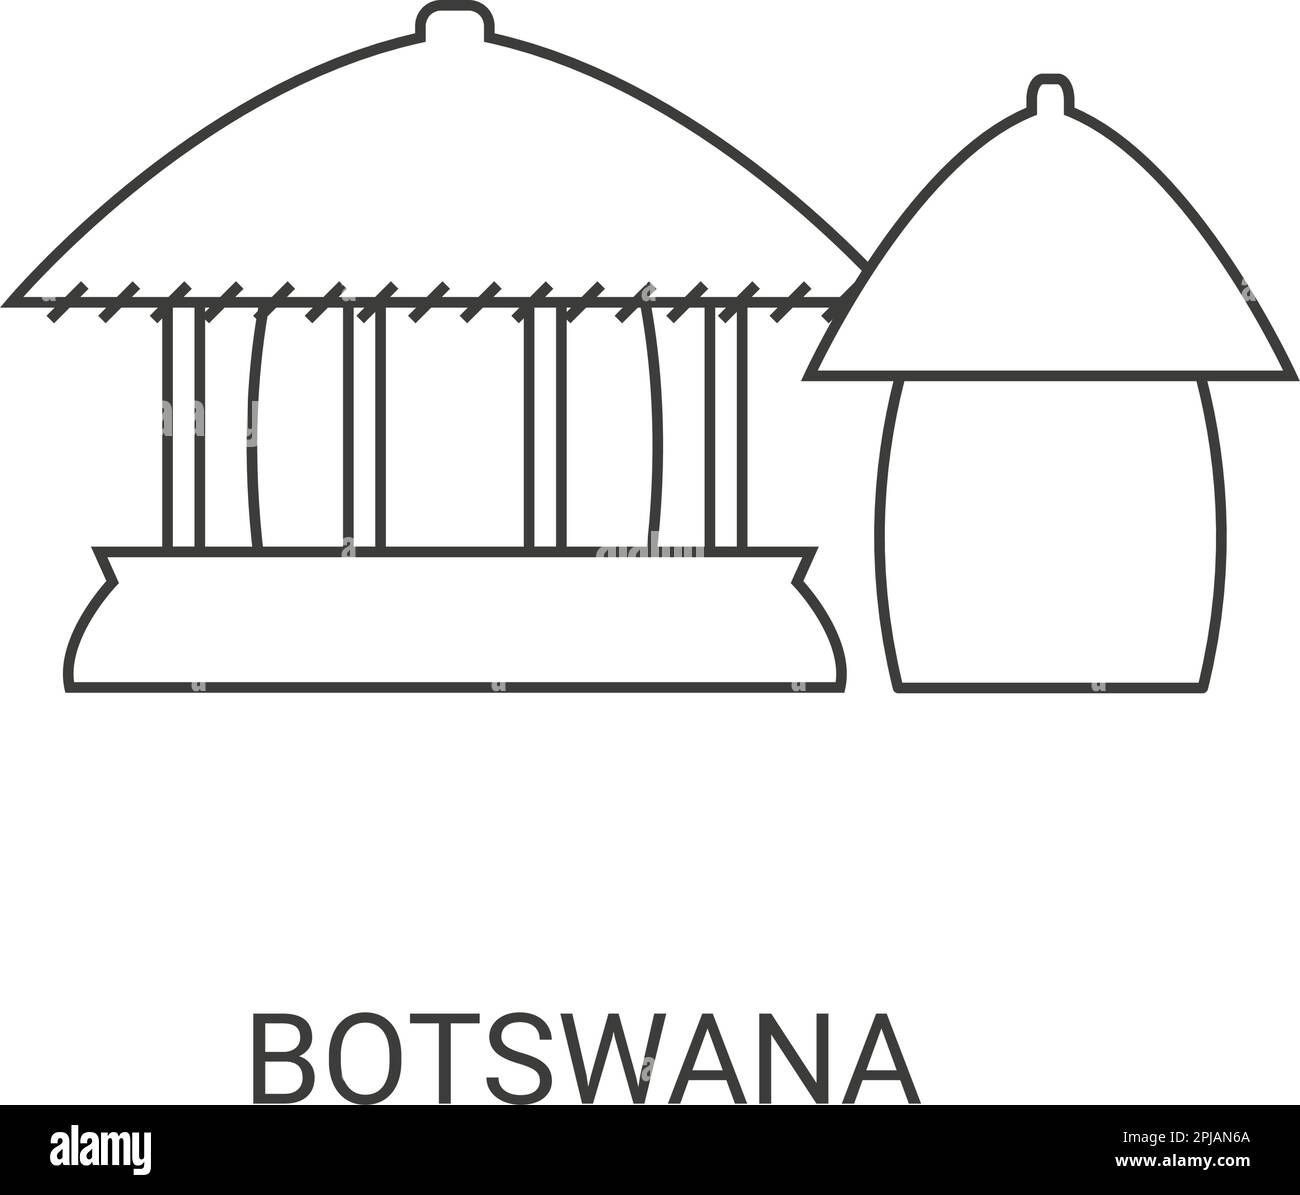 Botswana travel landmark vector illustration Stock Vector Image & Art ...